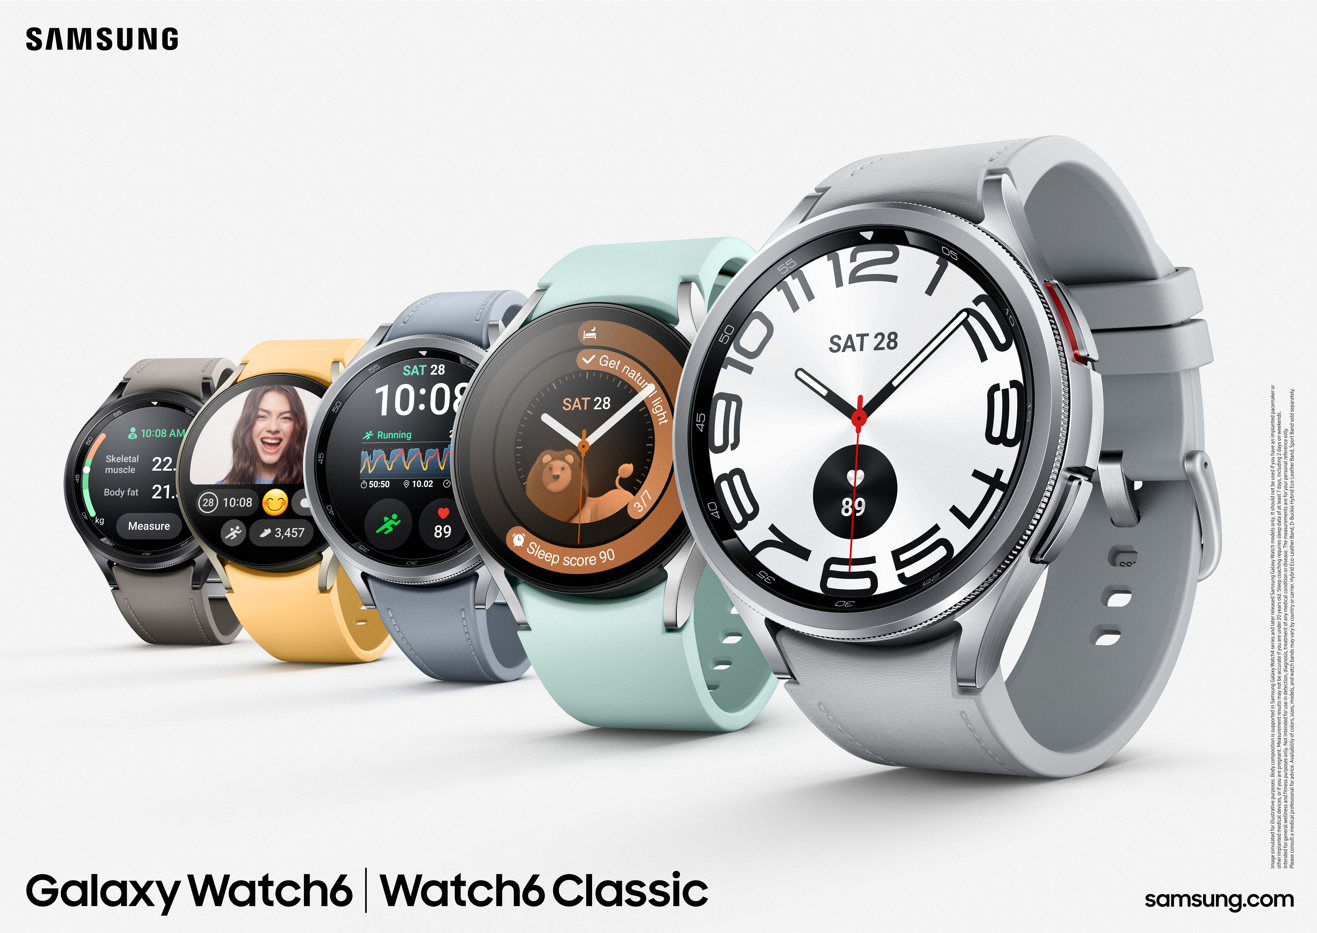 La nouvelle gamme Galaxy Watch6 donne des conseils de santé personnalisés, des mises à niveau de design réfléchies et une expérience mobile améliorée pour vous aider à vous surpasser.